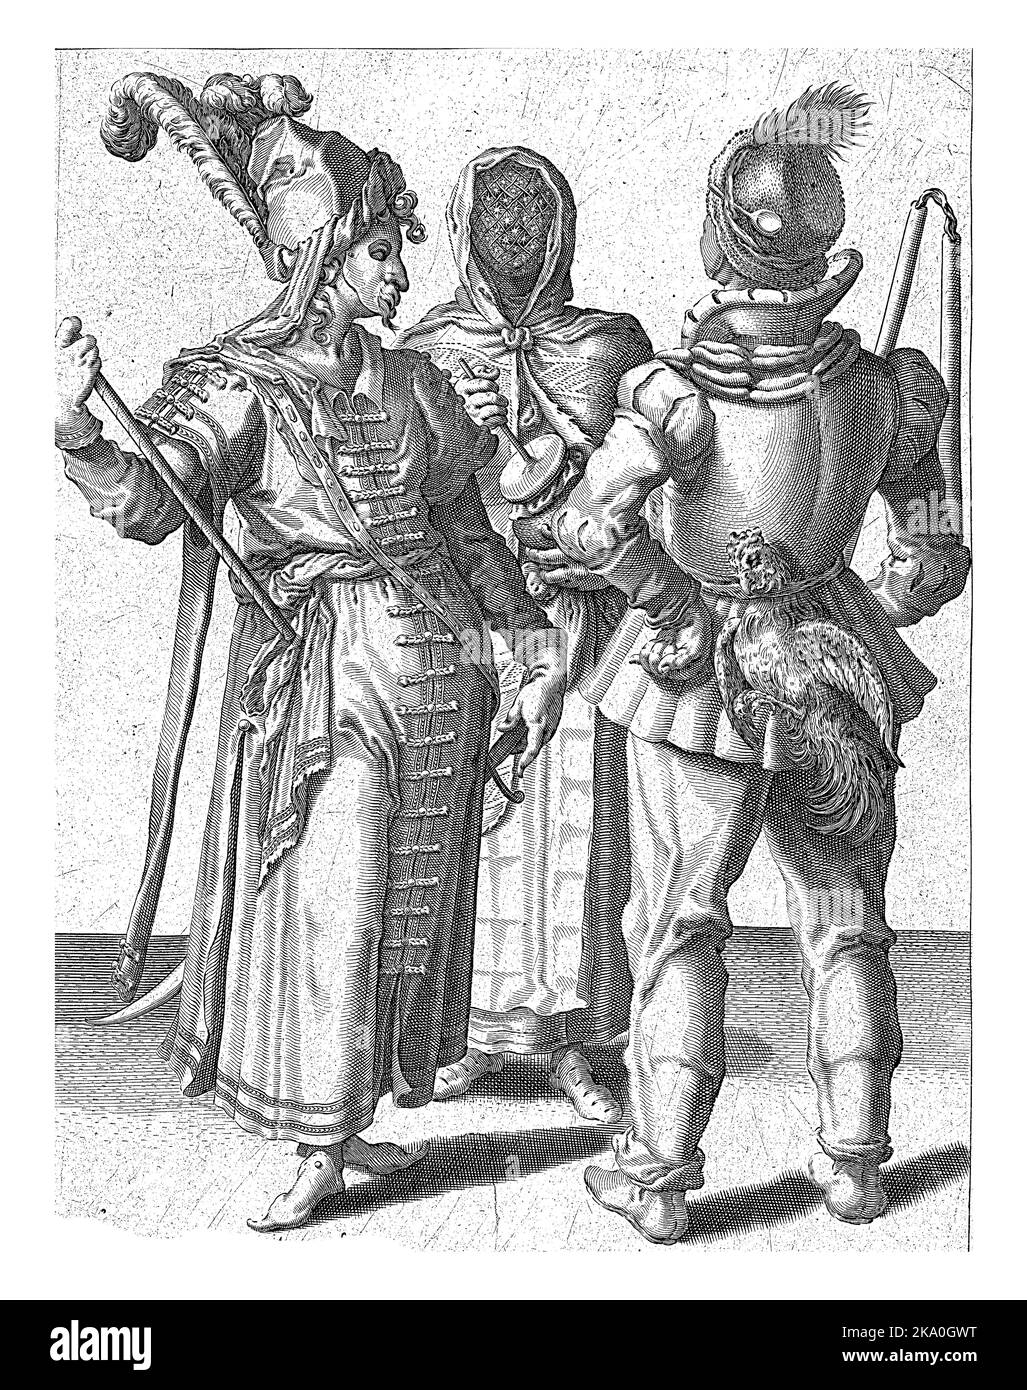 Zwei maskierte und verkleidete Männer - einer von hinten gesehen mit einem Hahn auf dem Gürtel, einer in orientalischer Kleidung - stehen vor einer verschleierten Dame mit einem Schrotttopf Stockfoto